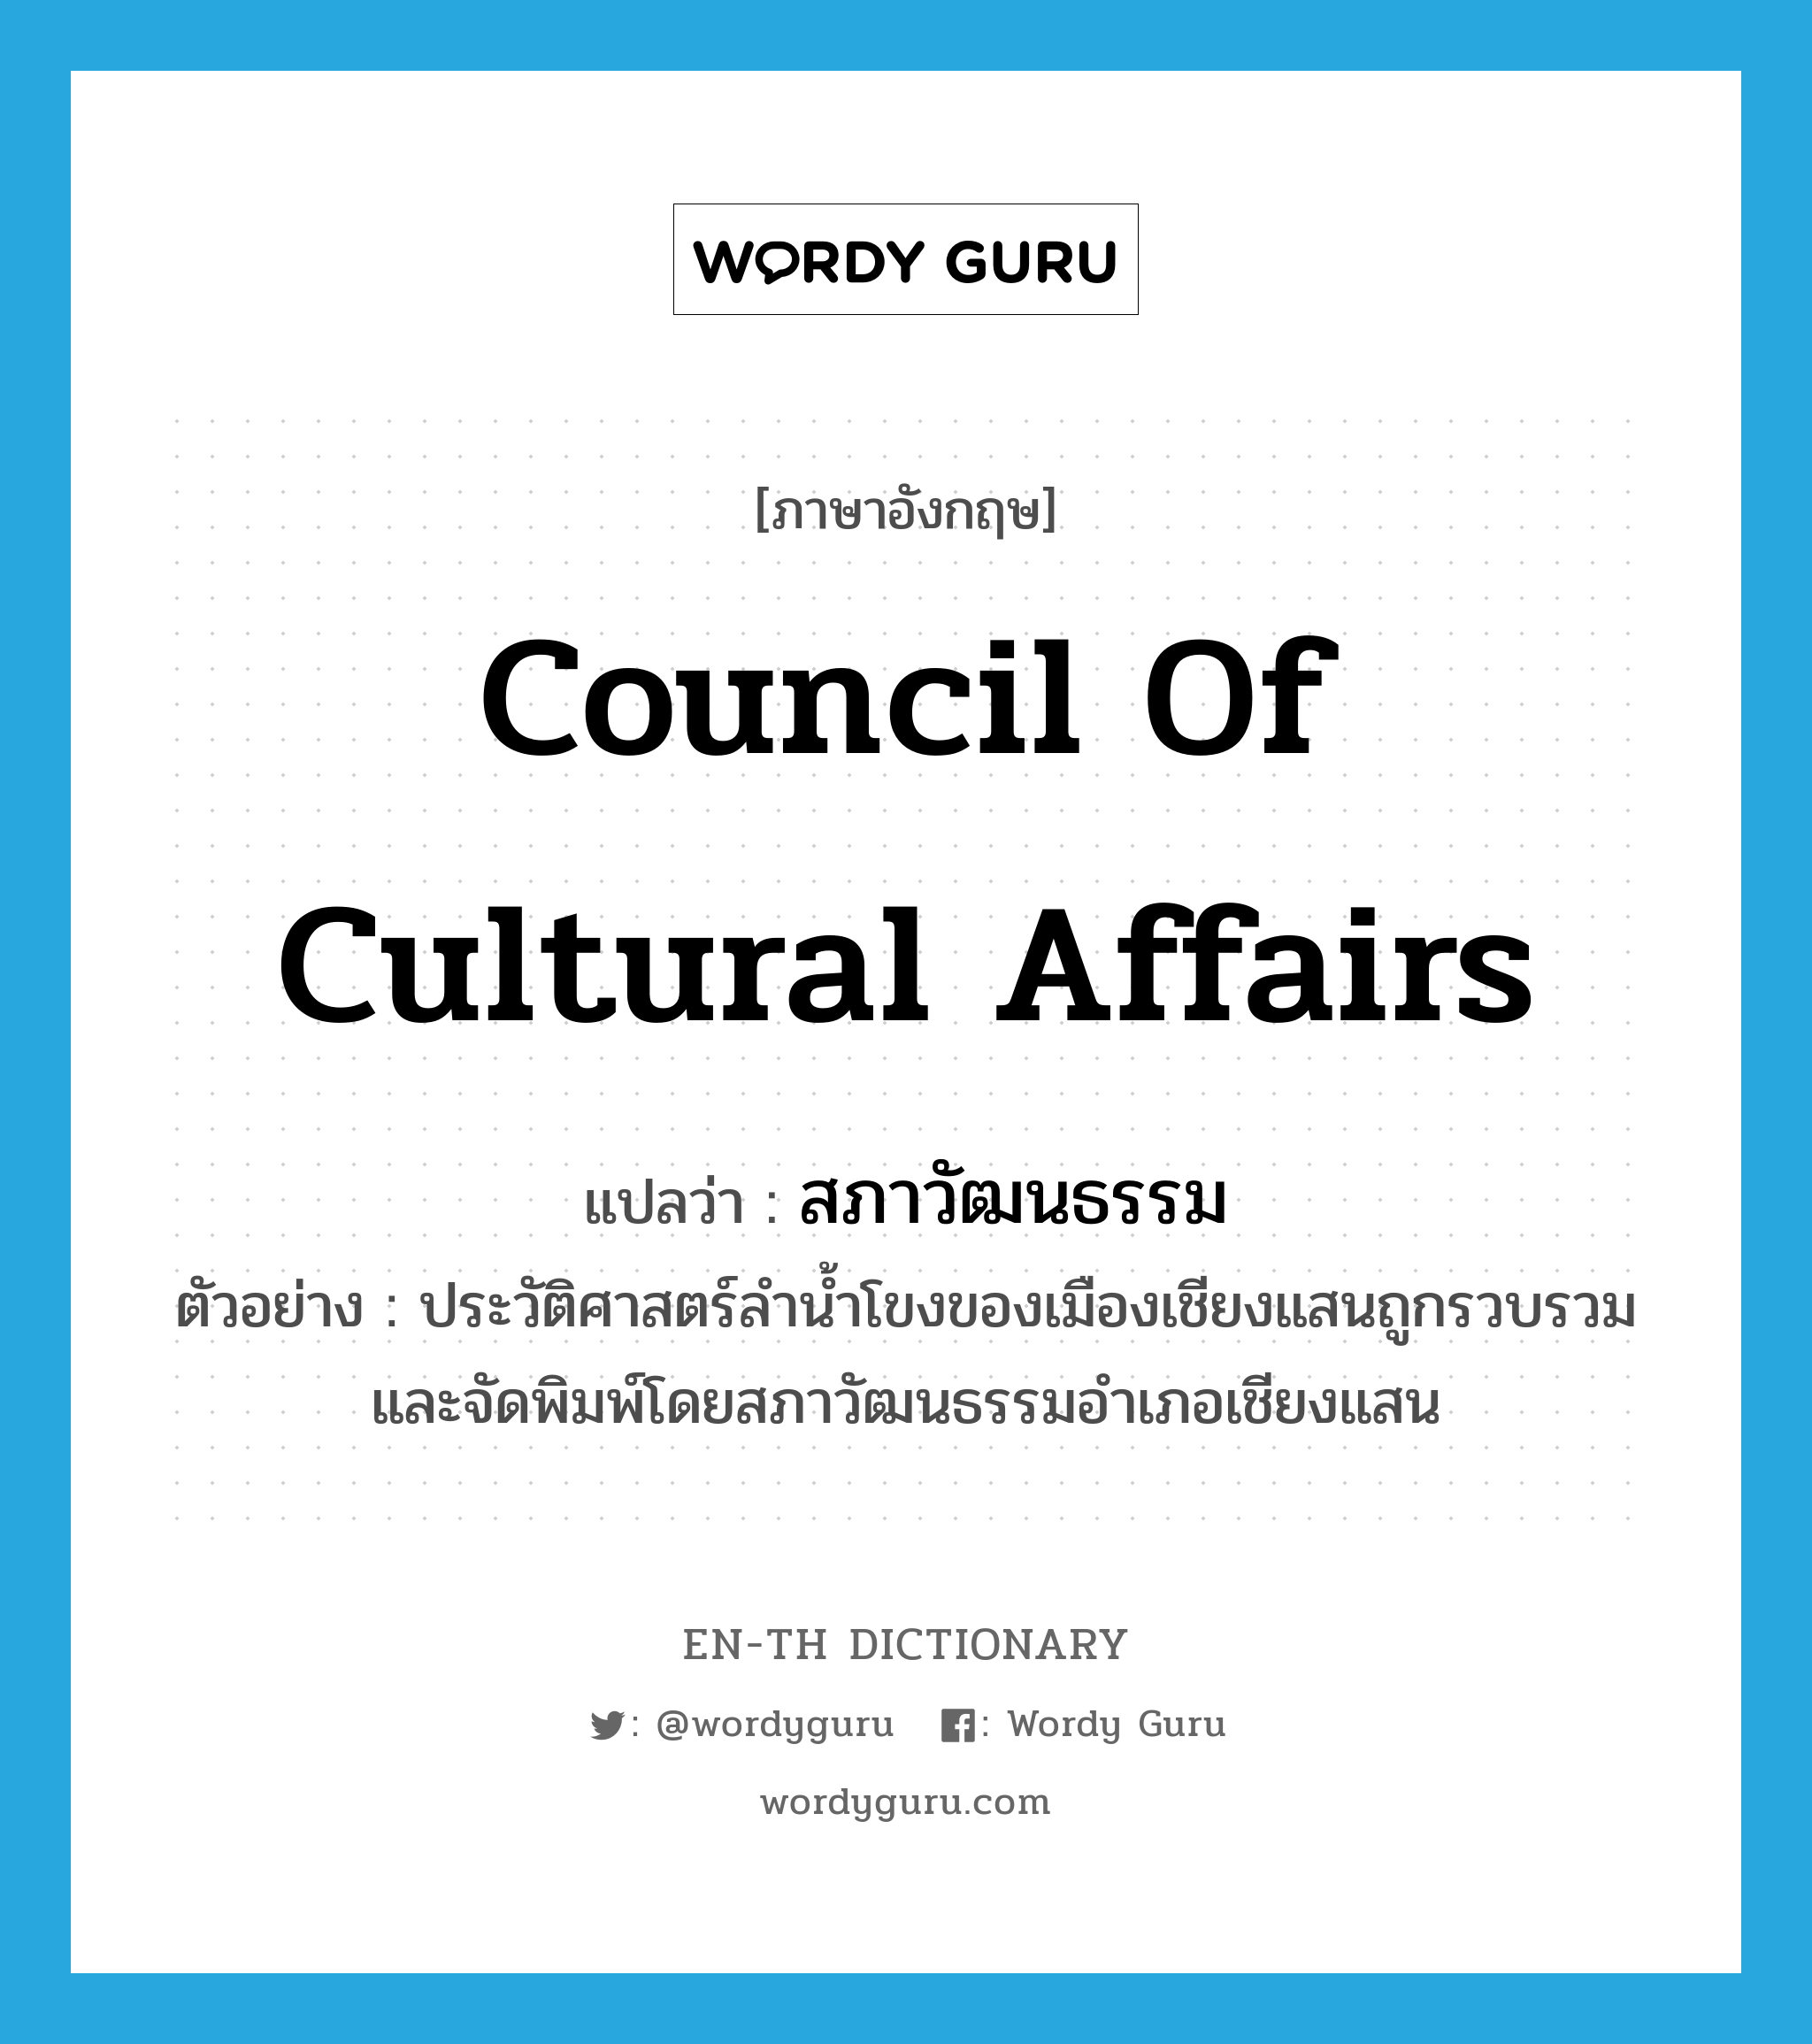 Council of Cultural Affairs แปลว่า?, คำศัพท์ภาษาอังกฤษ Council of Cultural Affairs แปลว่า สภาวัฒนธรรม ประเภท N ตัวอย่าง ประวัติศาสตร์ลำน้ำโขงของเมืองเชียงแสนถูกรวบรวมและจัดพิมพ์โดยสภาวัฒนธรรมอำเภอเชียงแสน หมวด N